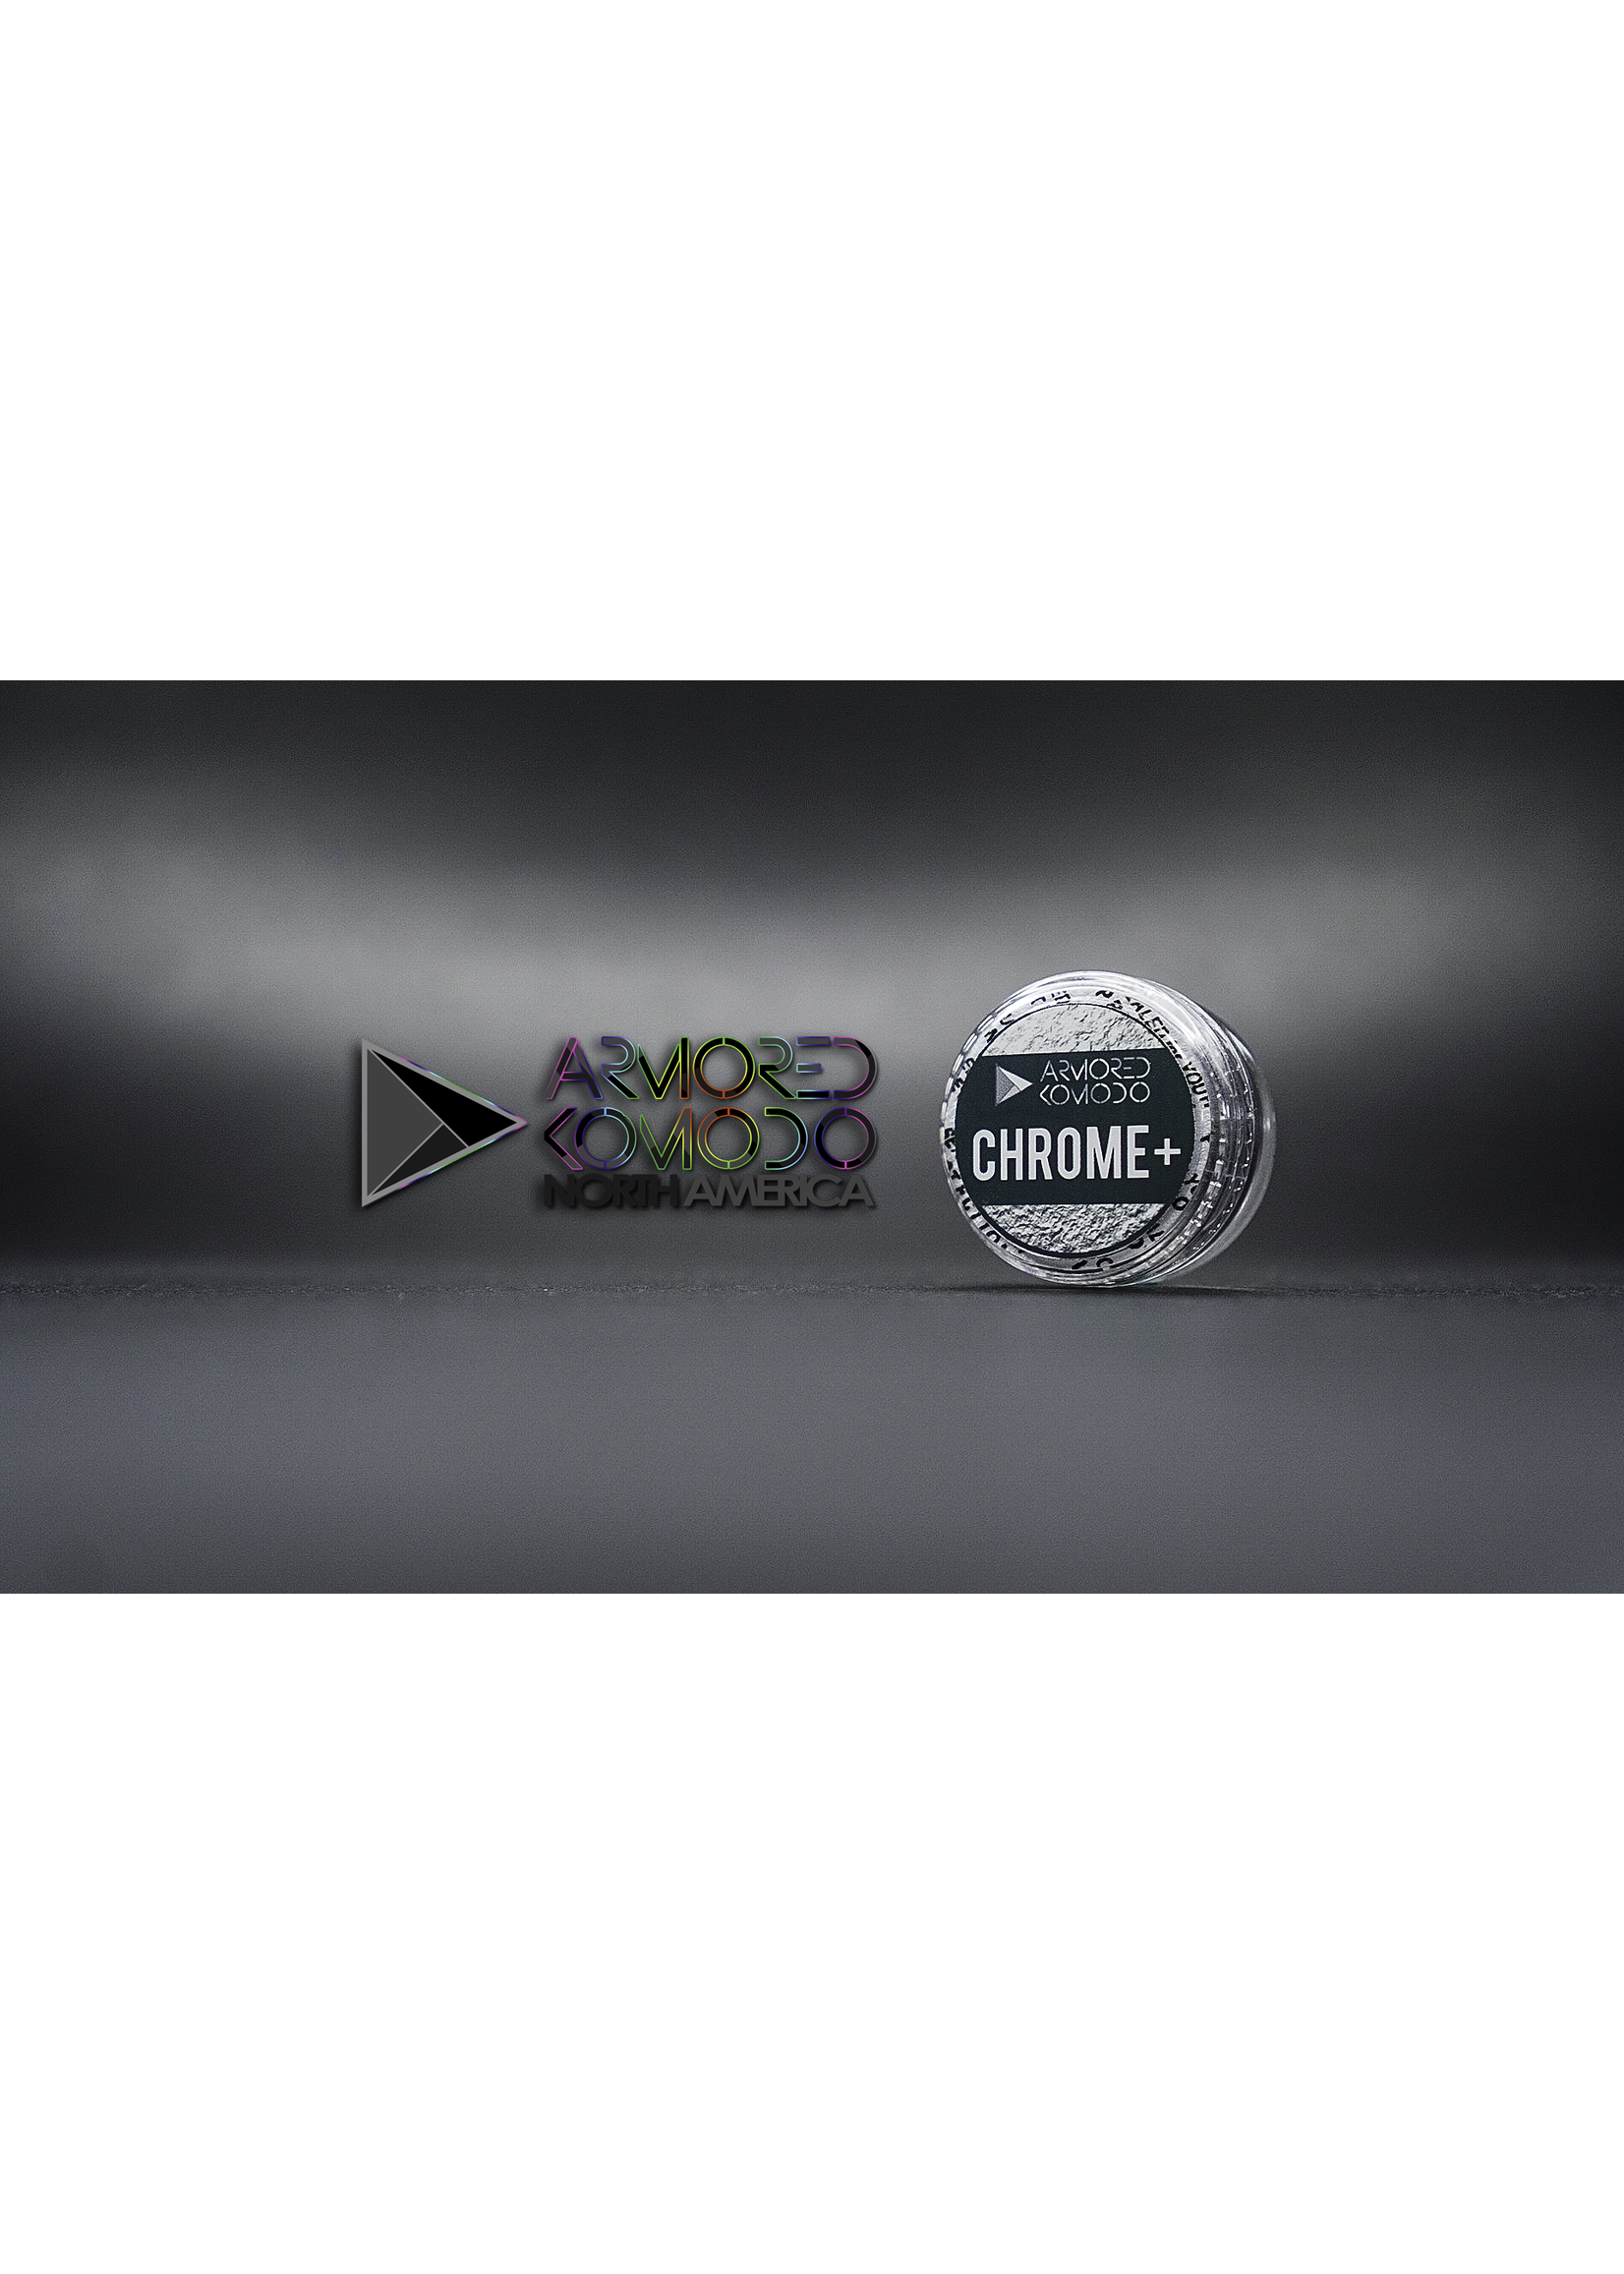 Armored Komodo Basic Chromaflair: Chrome+